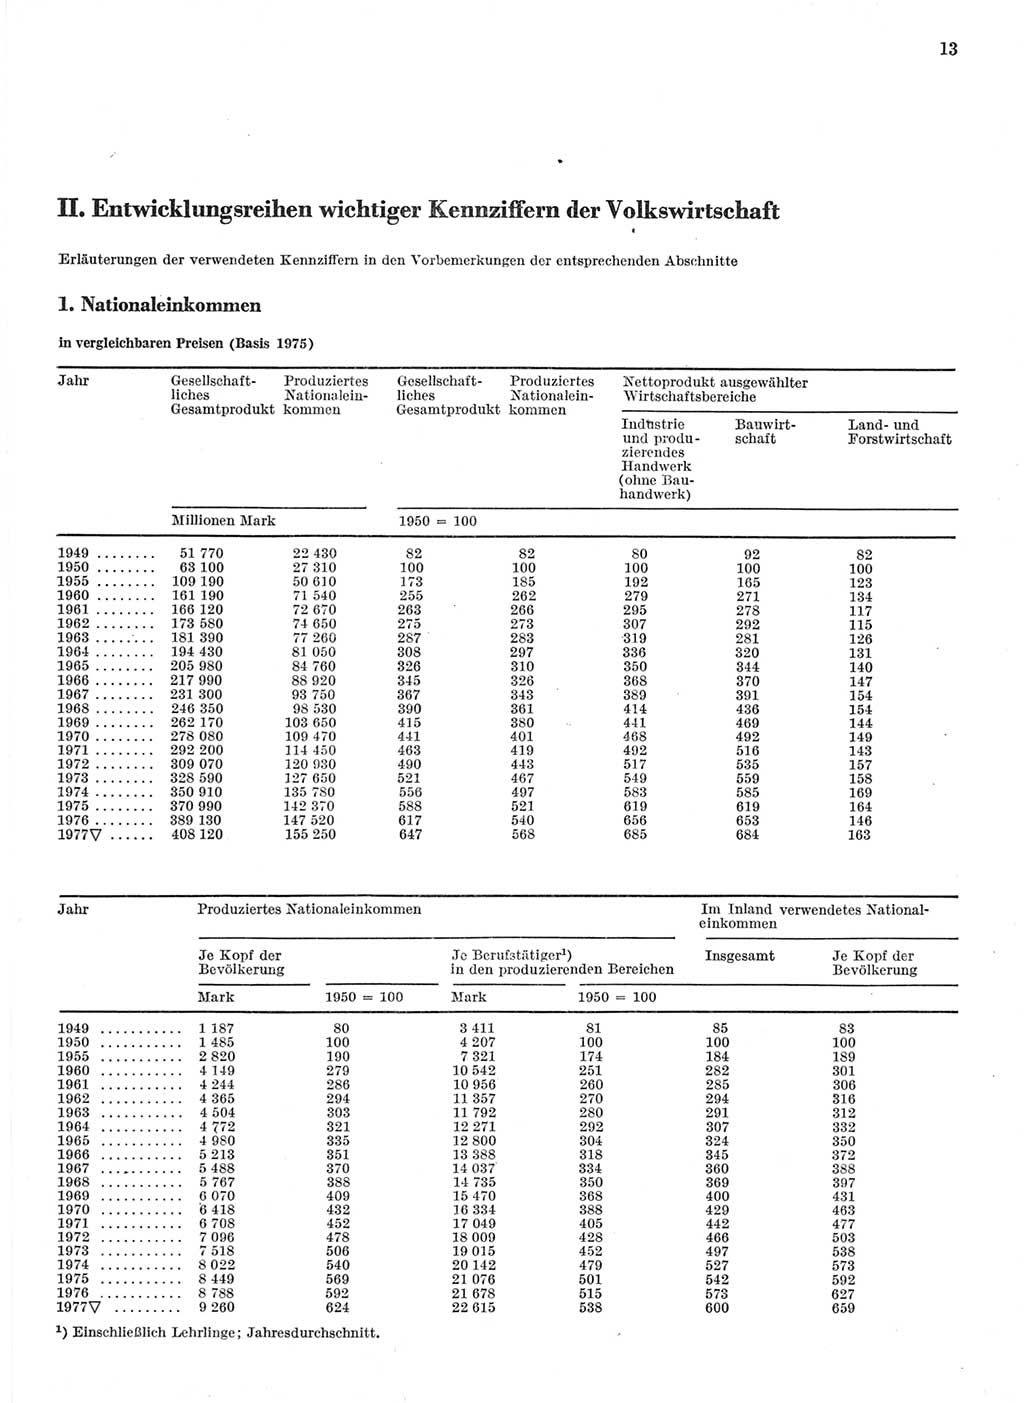 Statistisches Jahrbuch der Deutschen Demokratischen Republik (DDR) 1978, Seite 13 (Stat. Jb. DDR 1978, S. 13)